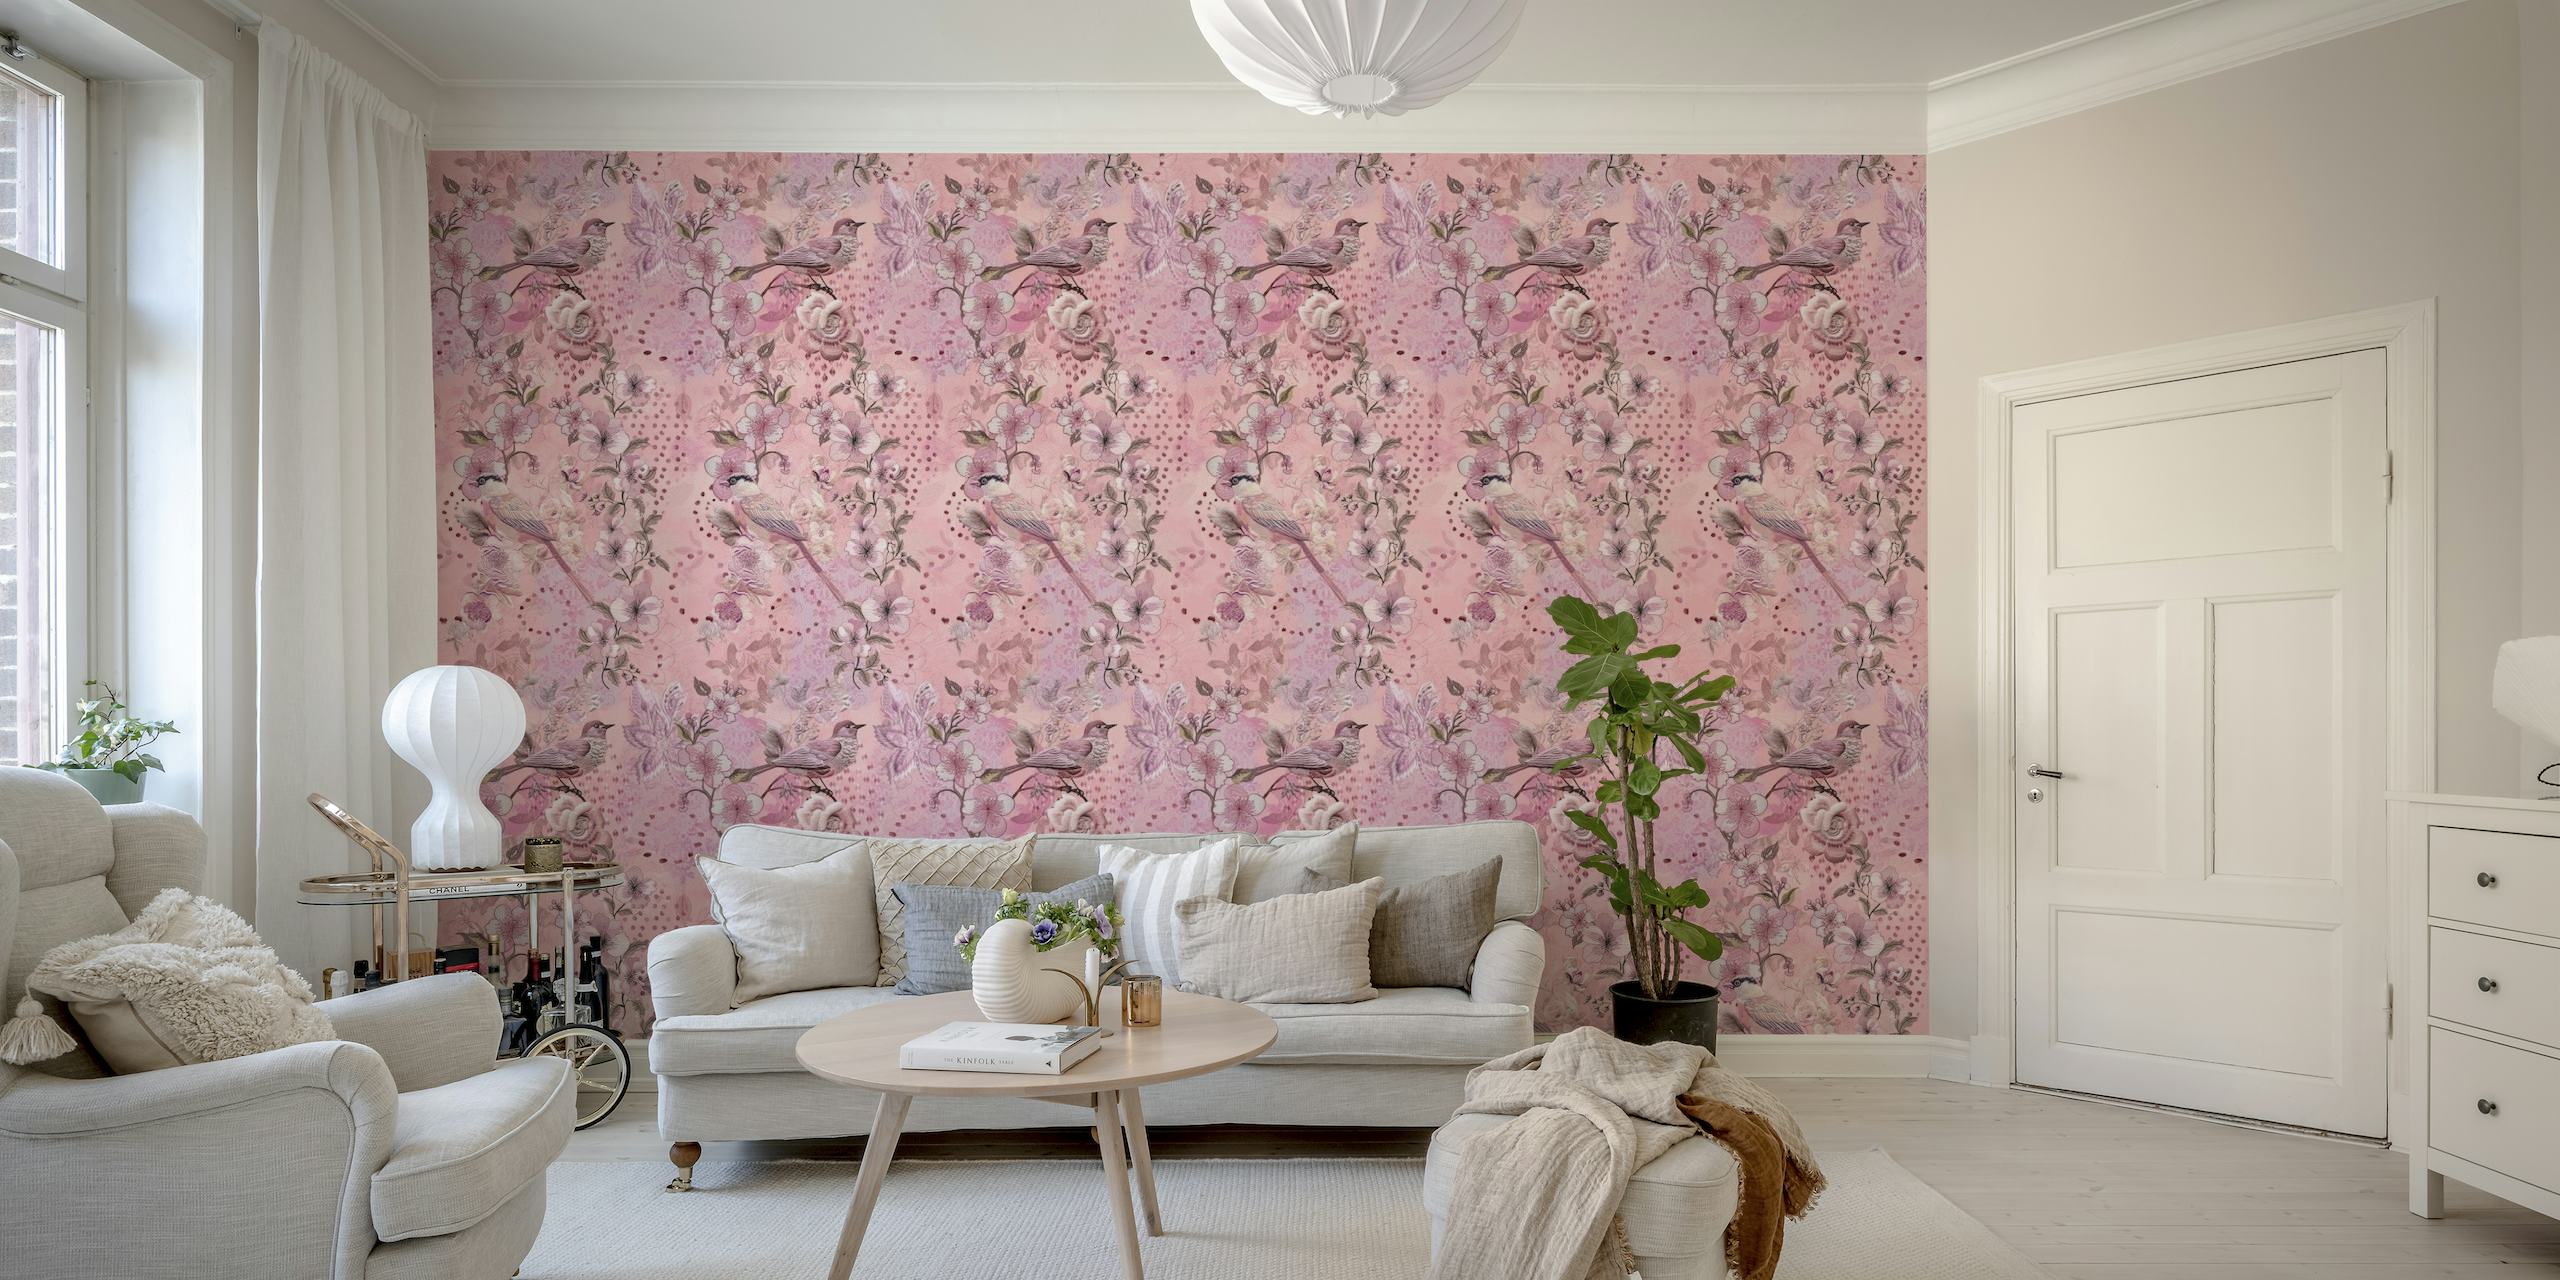 Fotomural estilo bordado de pájaros y flores en tonos rosas